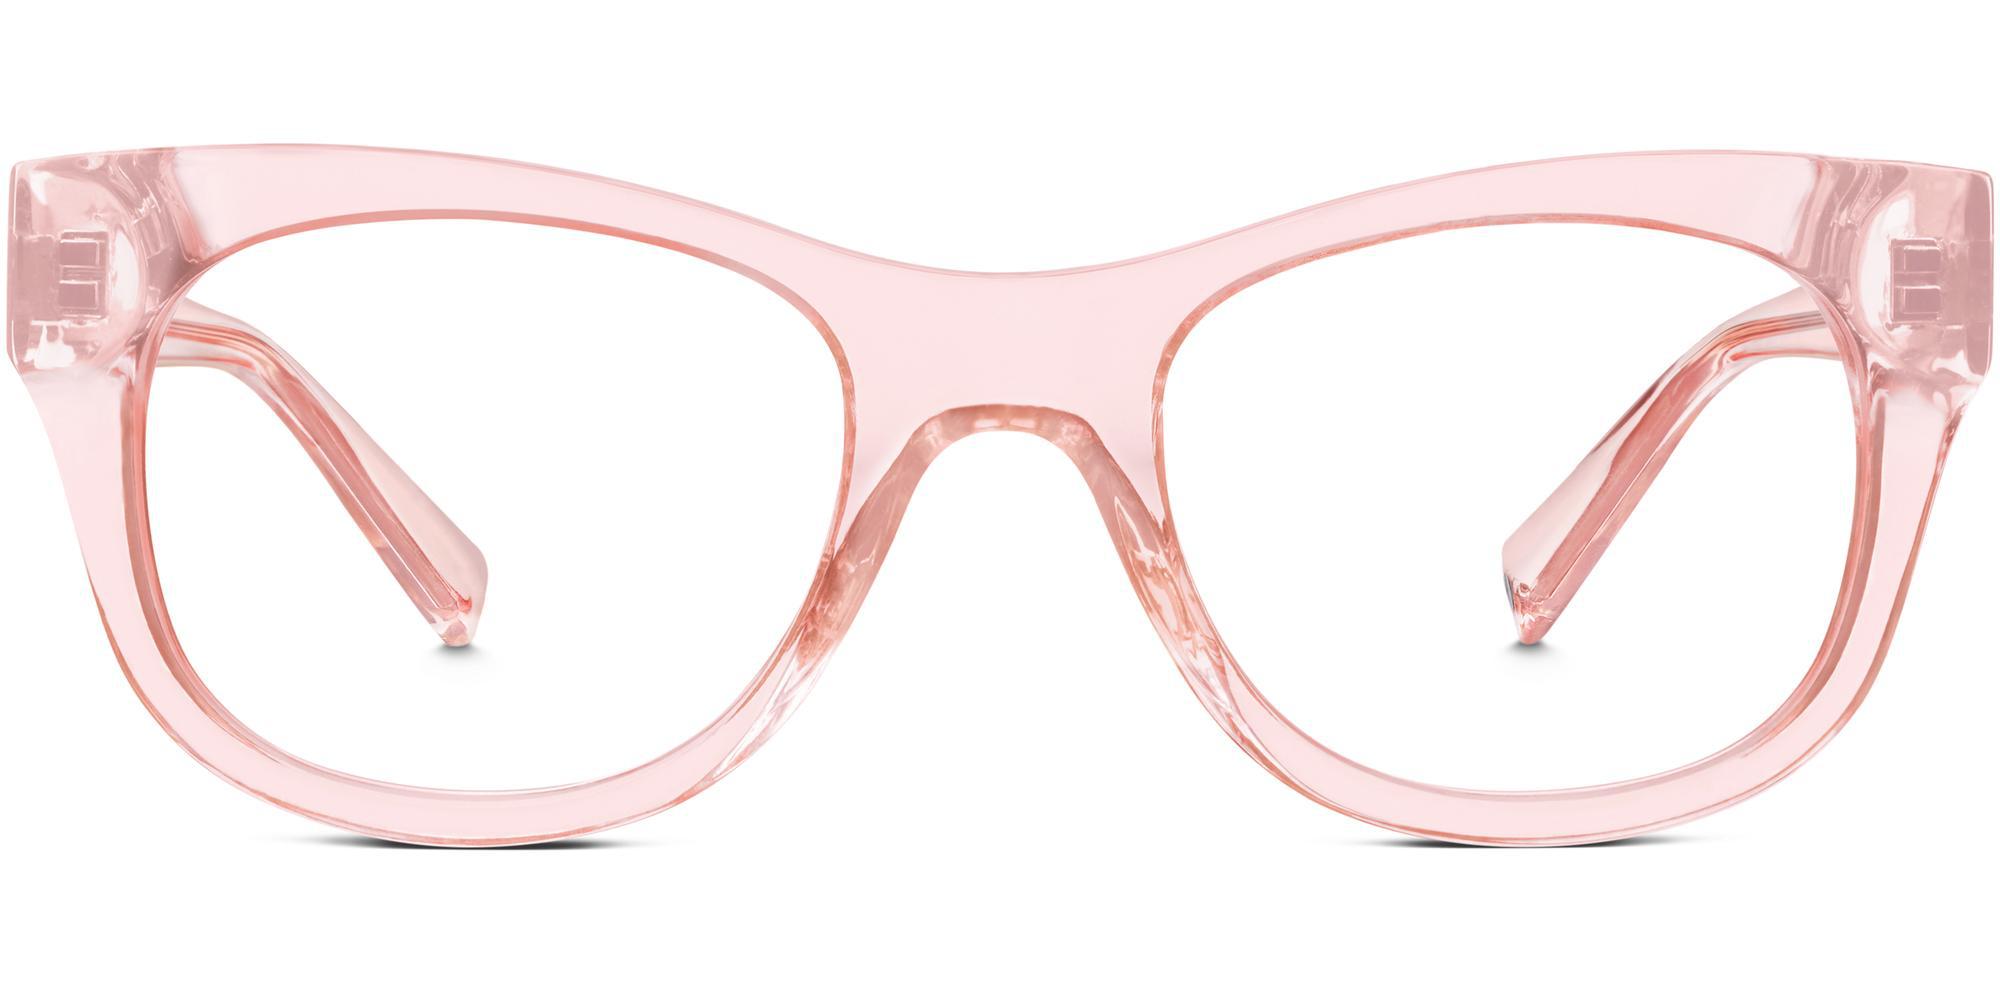 Tijn очки. Очки розовой пантеры. Warby Parker 2705122 145. Керби Паркерс очки солнцезащитные. Купить очки карта